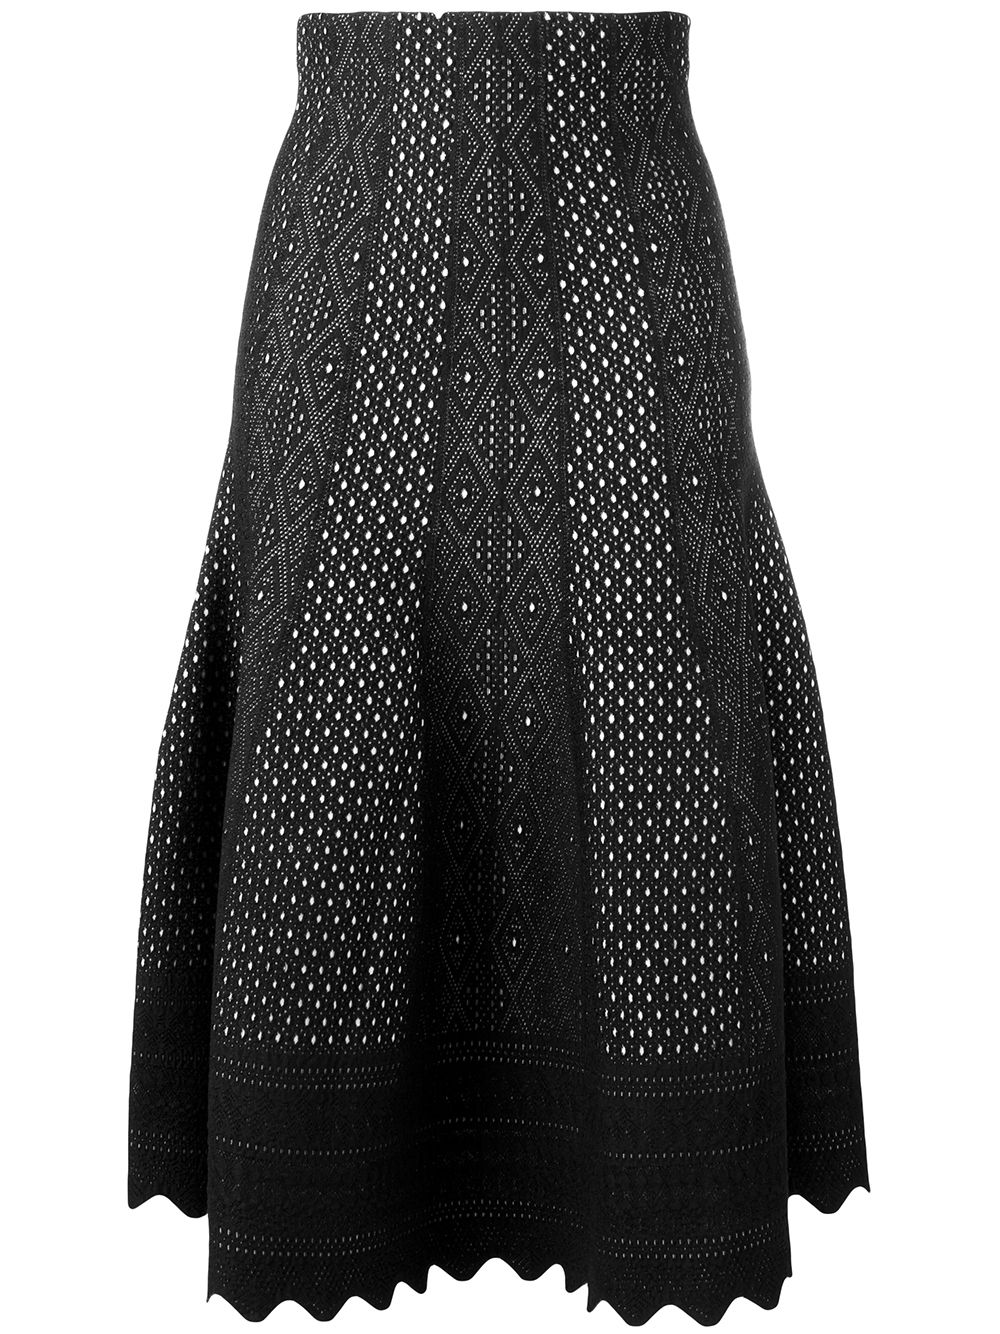 Alexander McQueen Jacquard Knit Skirt - Farfetch